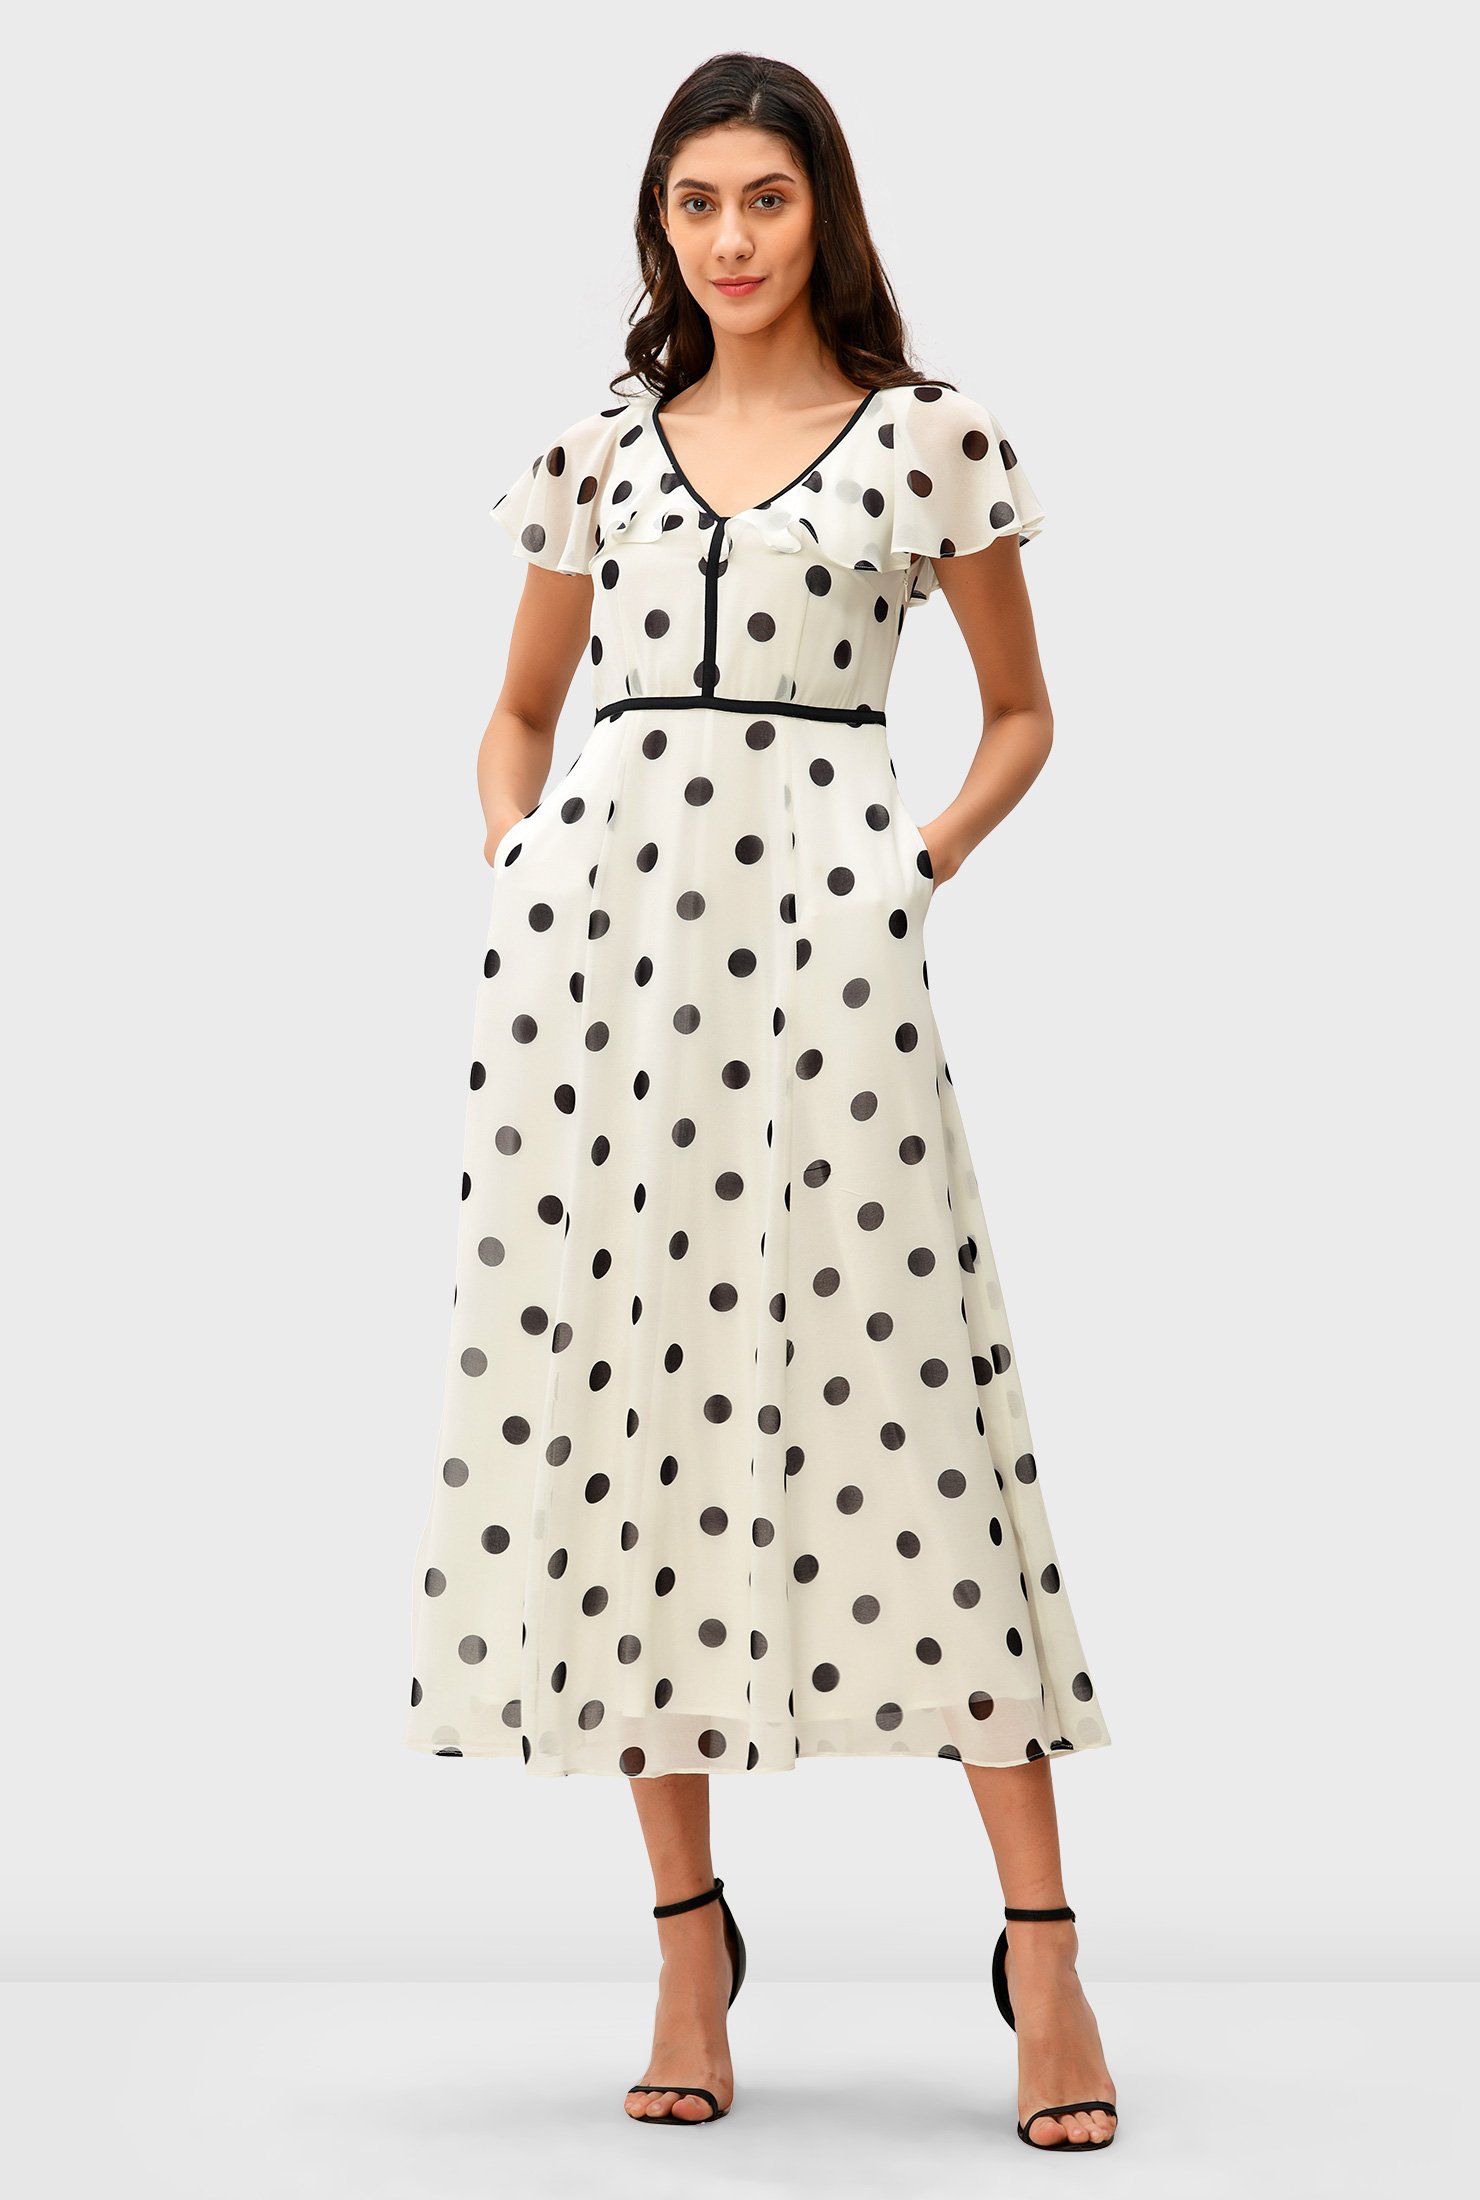 Shop Ruffle Polka Dot Print Georgette Dress Eshakti